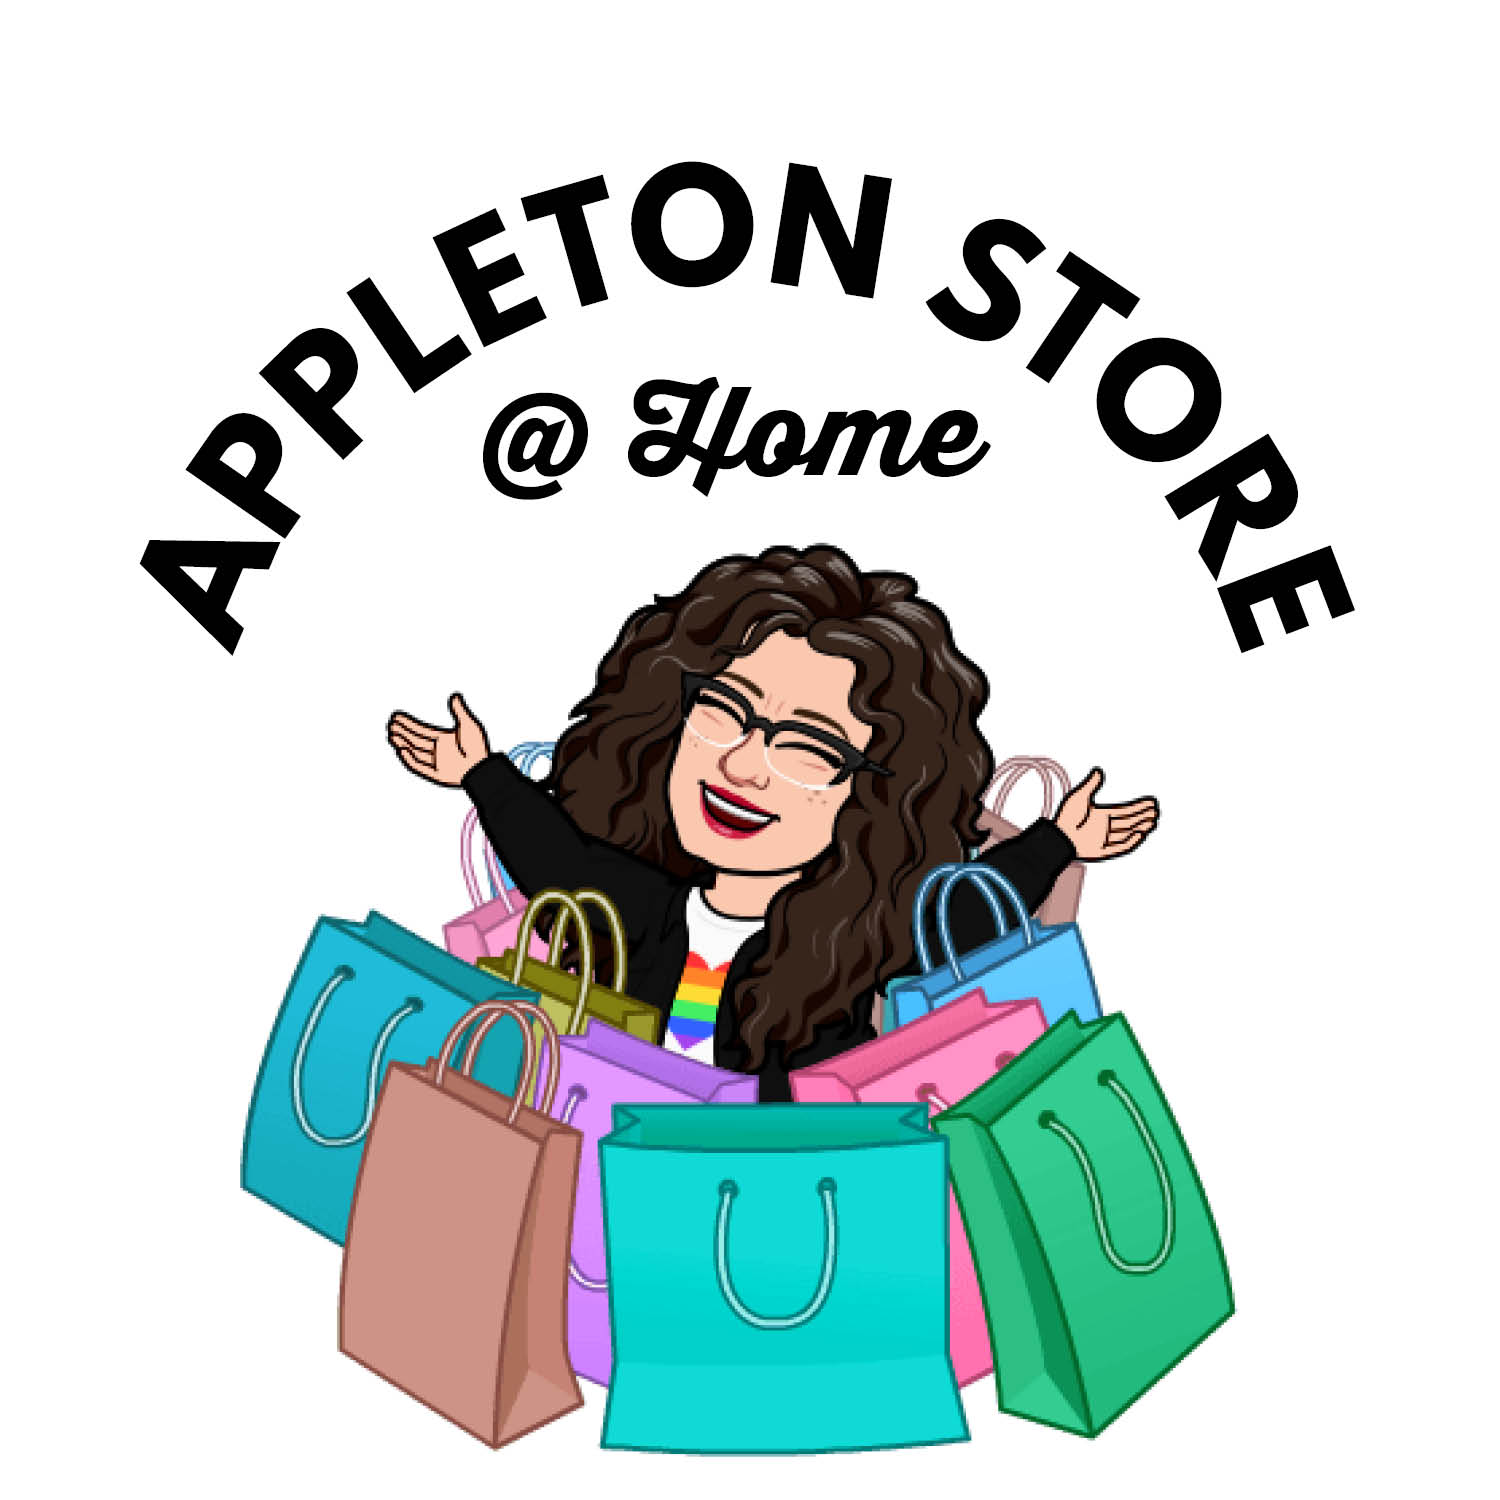 Appleton Store @ Home